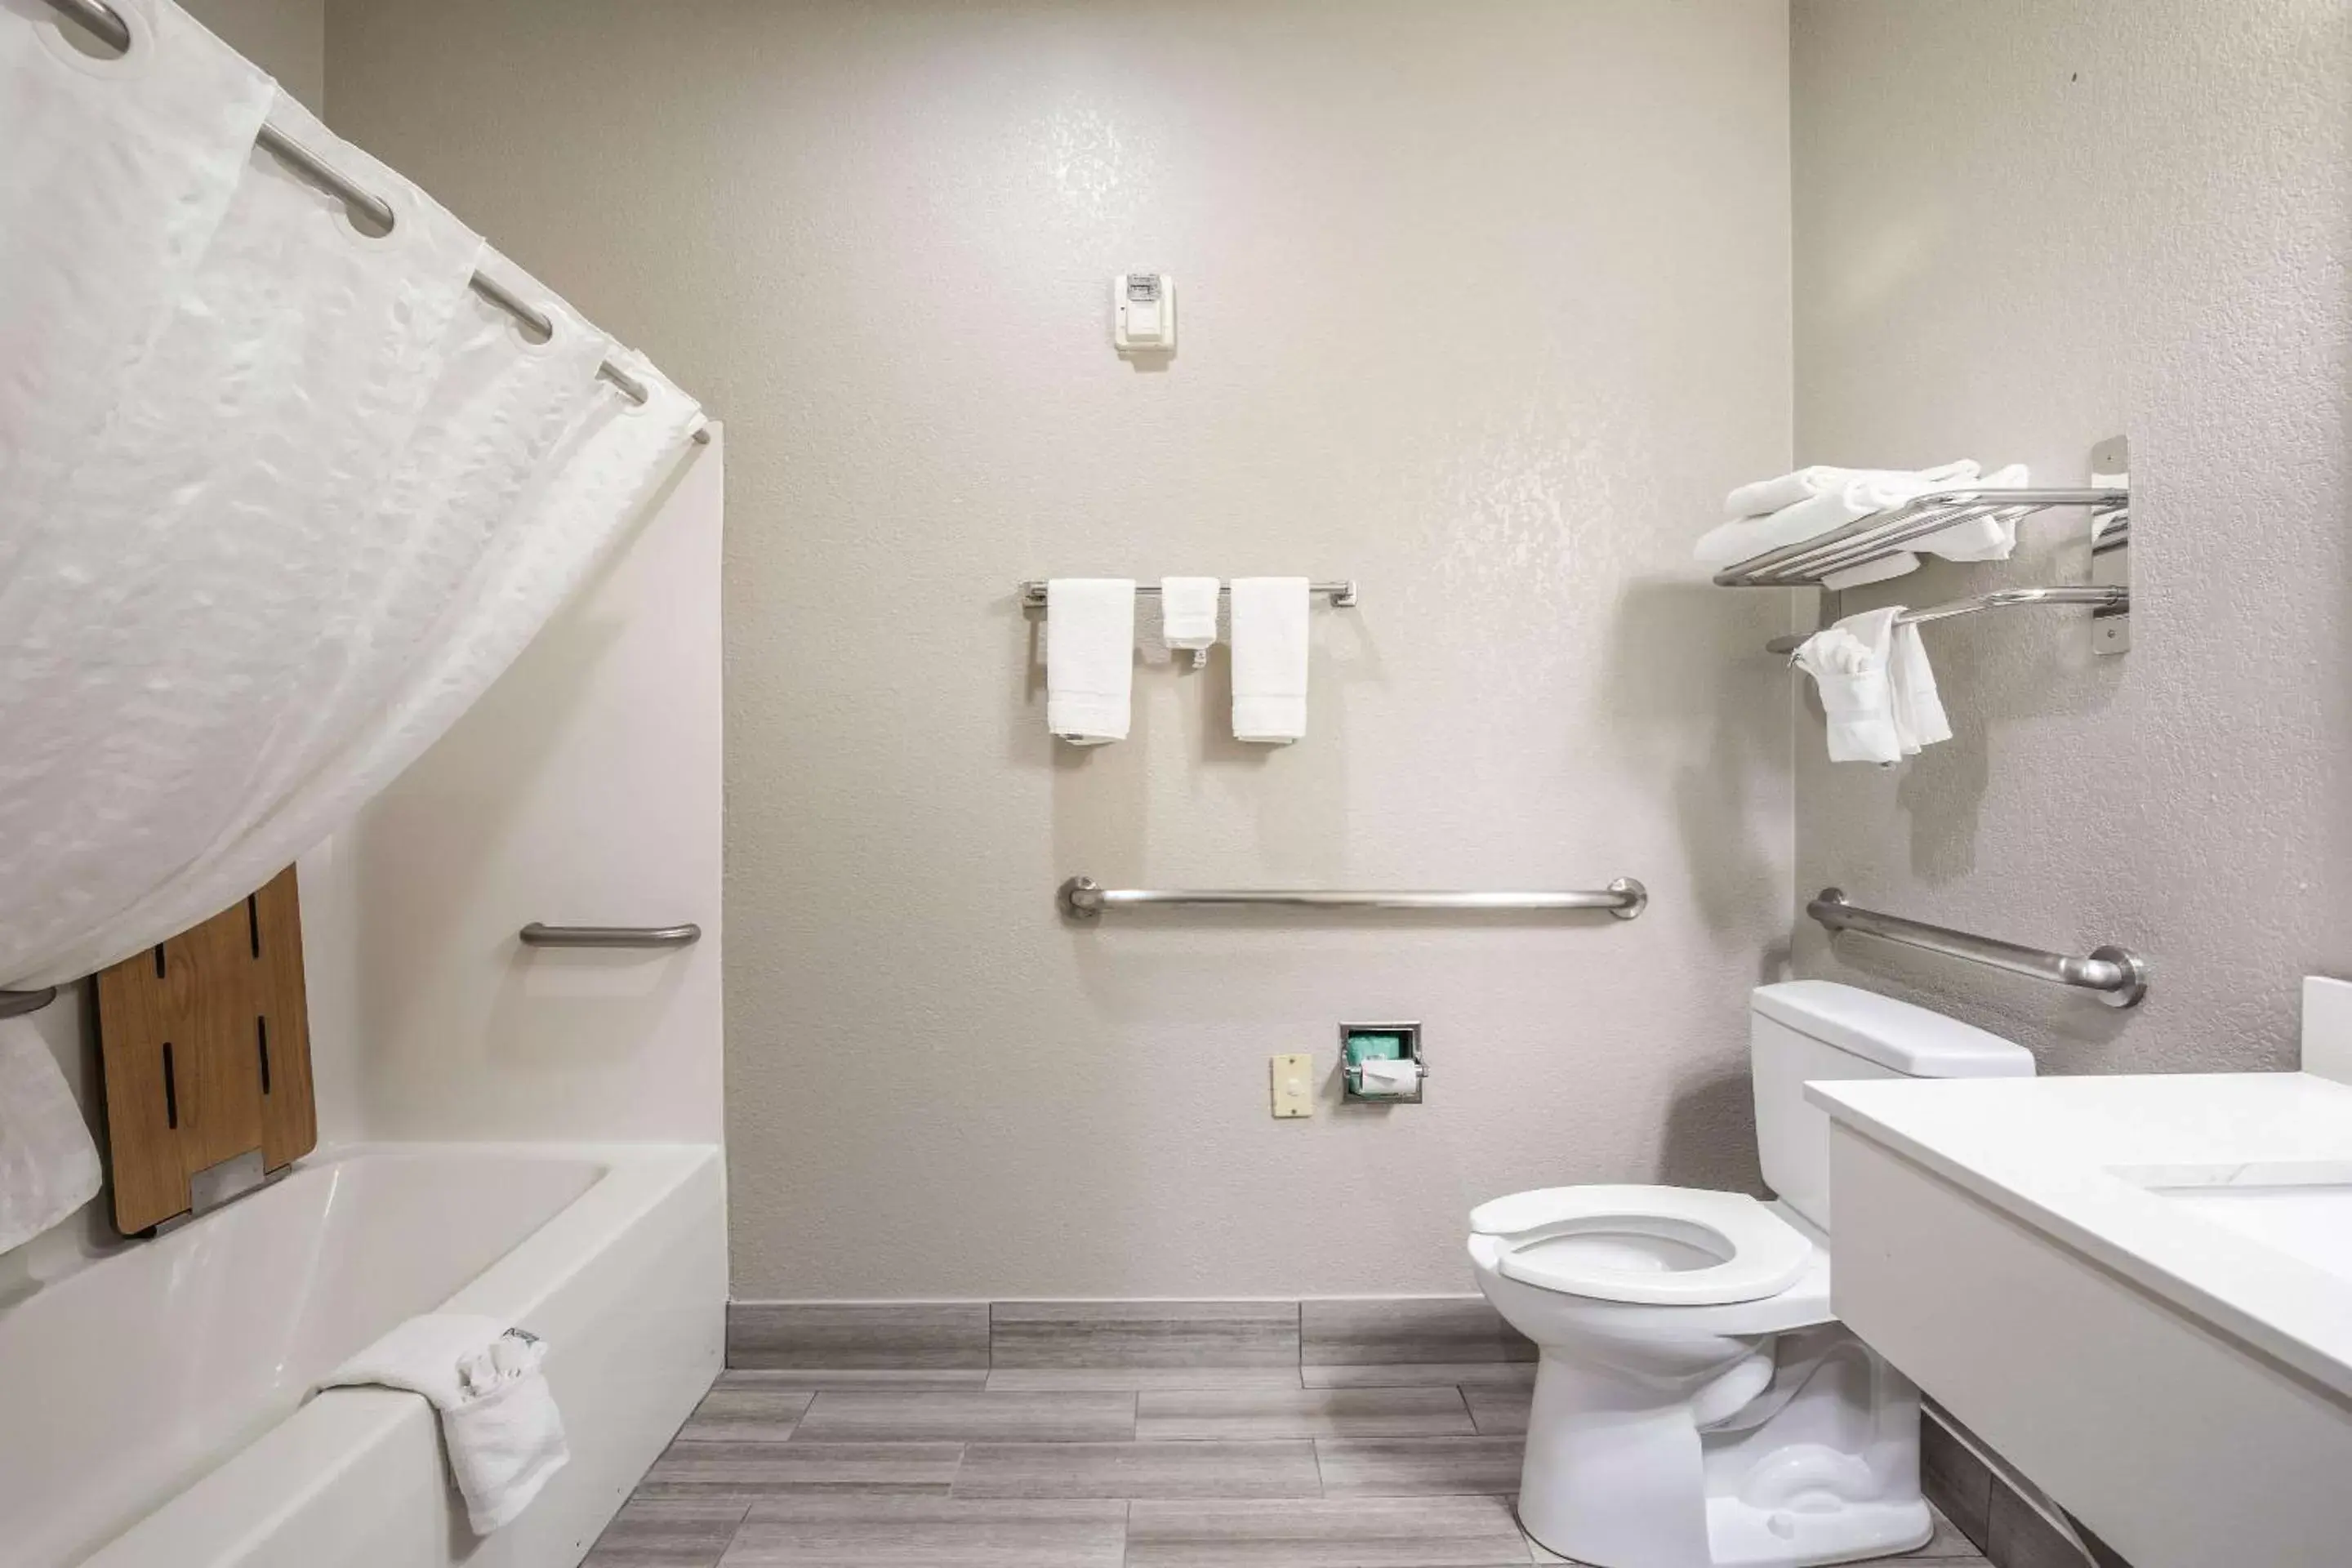 Bedroom, Bathroom in Quality Inn & Suites